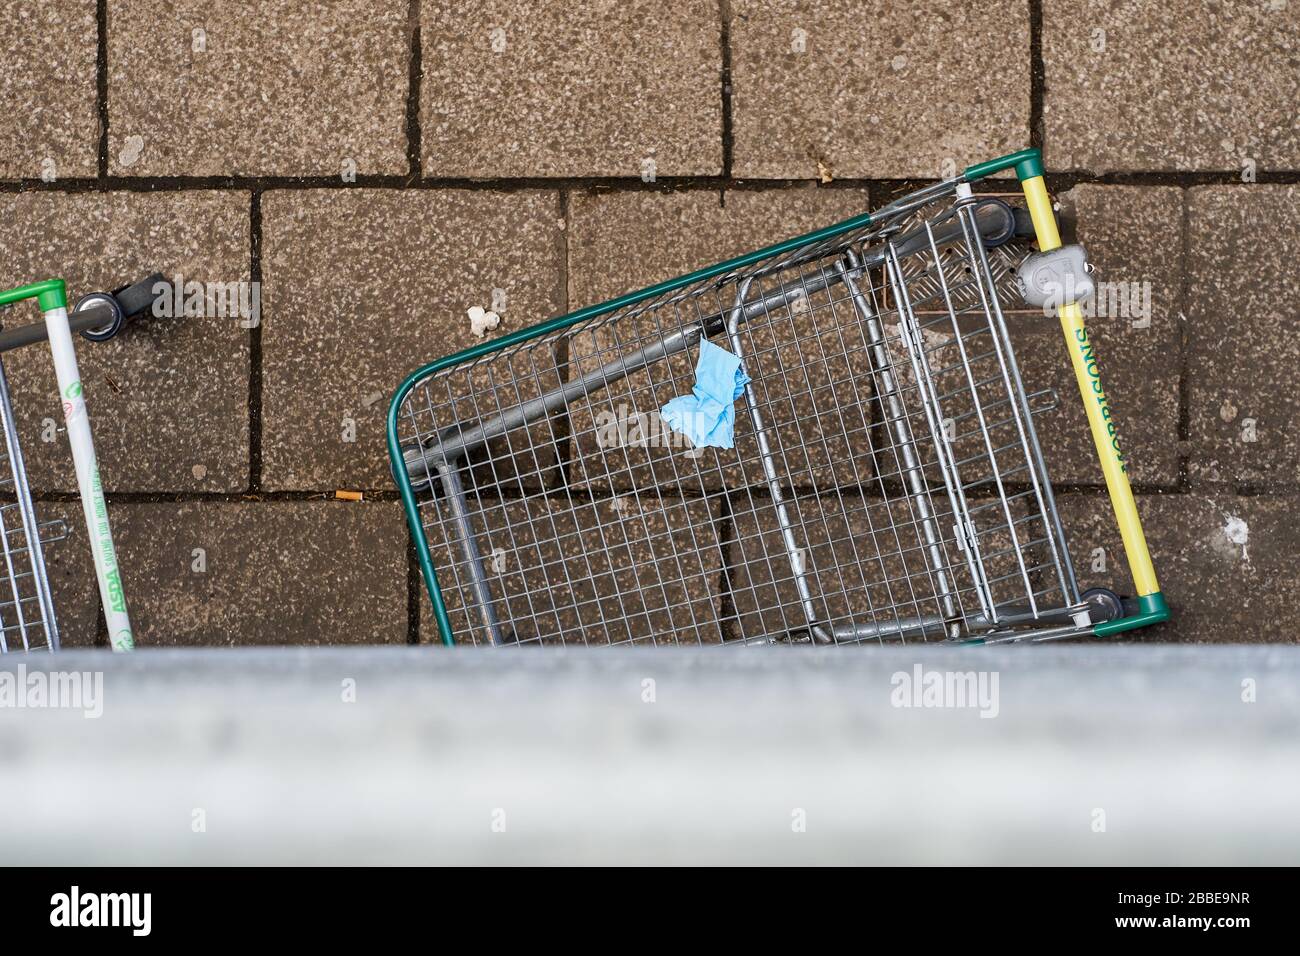 Durante el brote de la enfermedad de Coronavirus (COVID-19), los compradores del Reino Unido dejan guantes y tejidos en carritos y cestas de compras descartados. Foto de stock